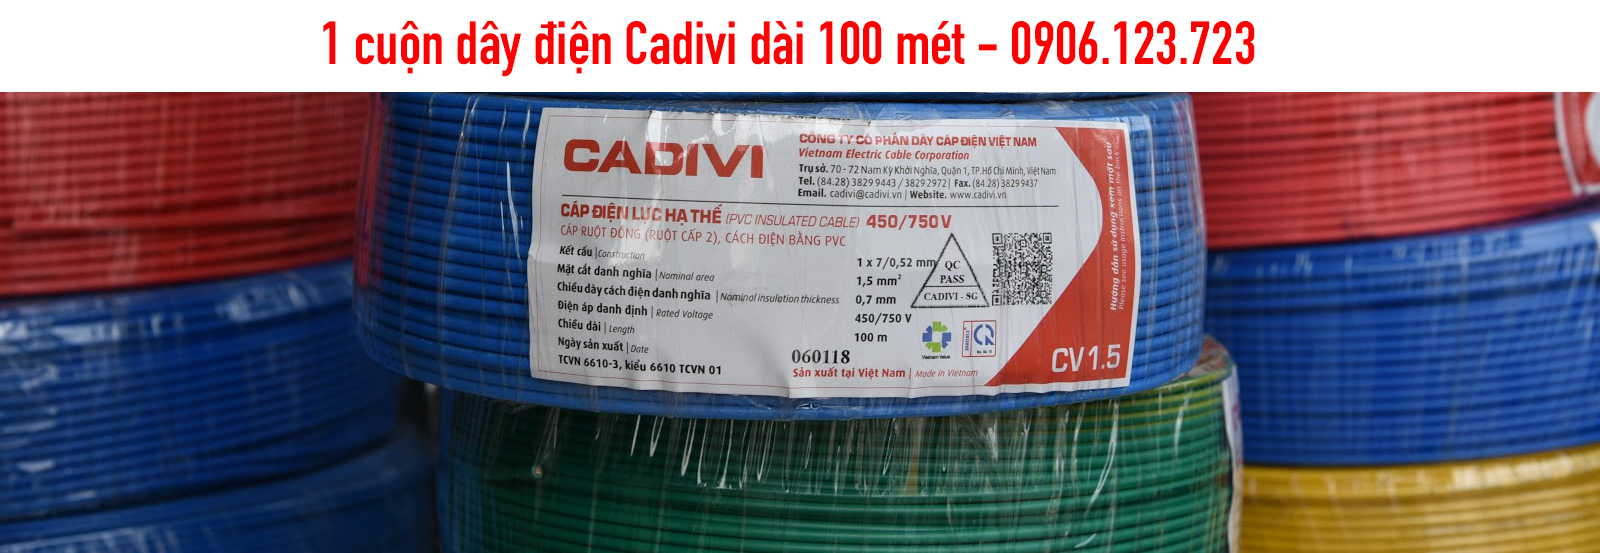 1 Cuộn dây điện Cadivi bao nhiêu mét?